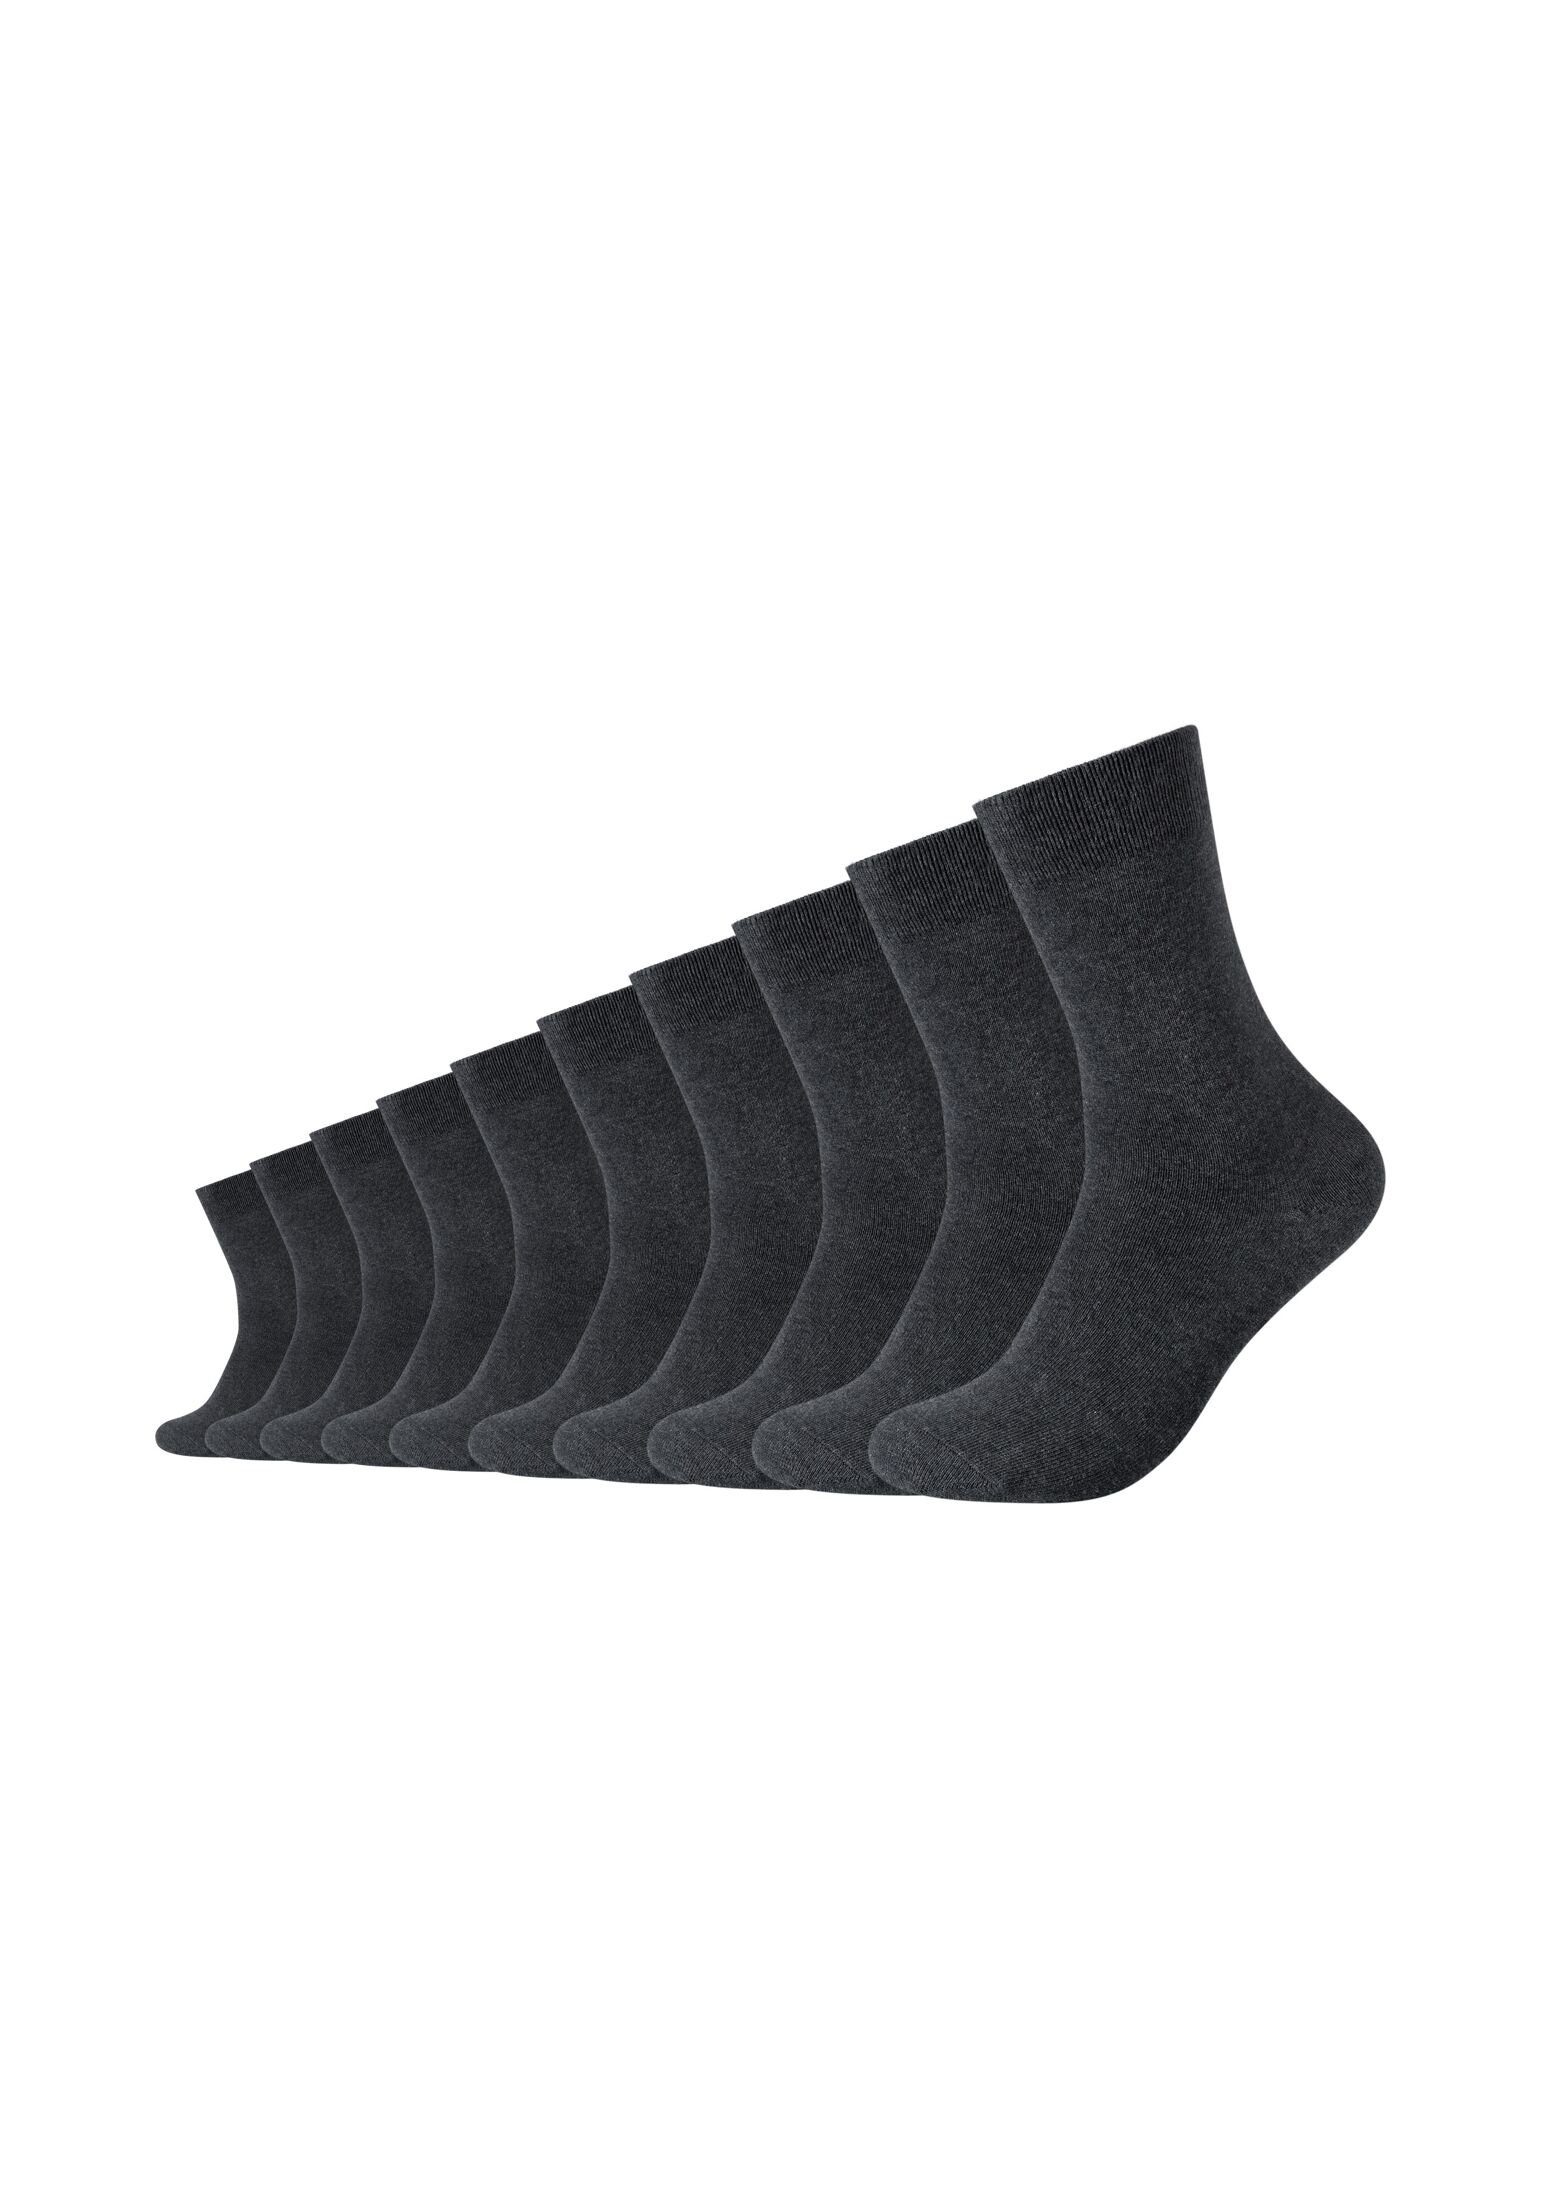 Camano Socken Socken Pack anthracite 10er melange